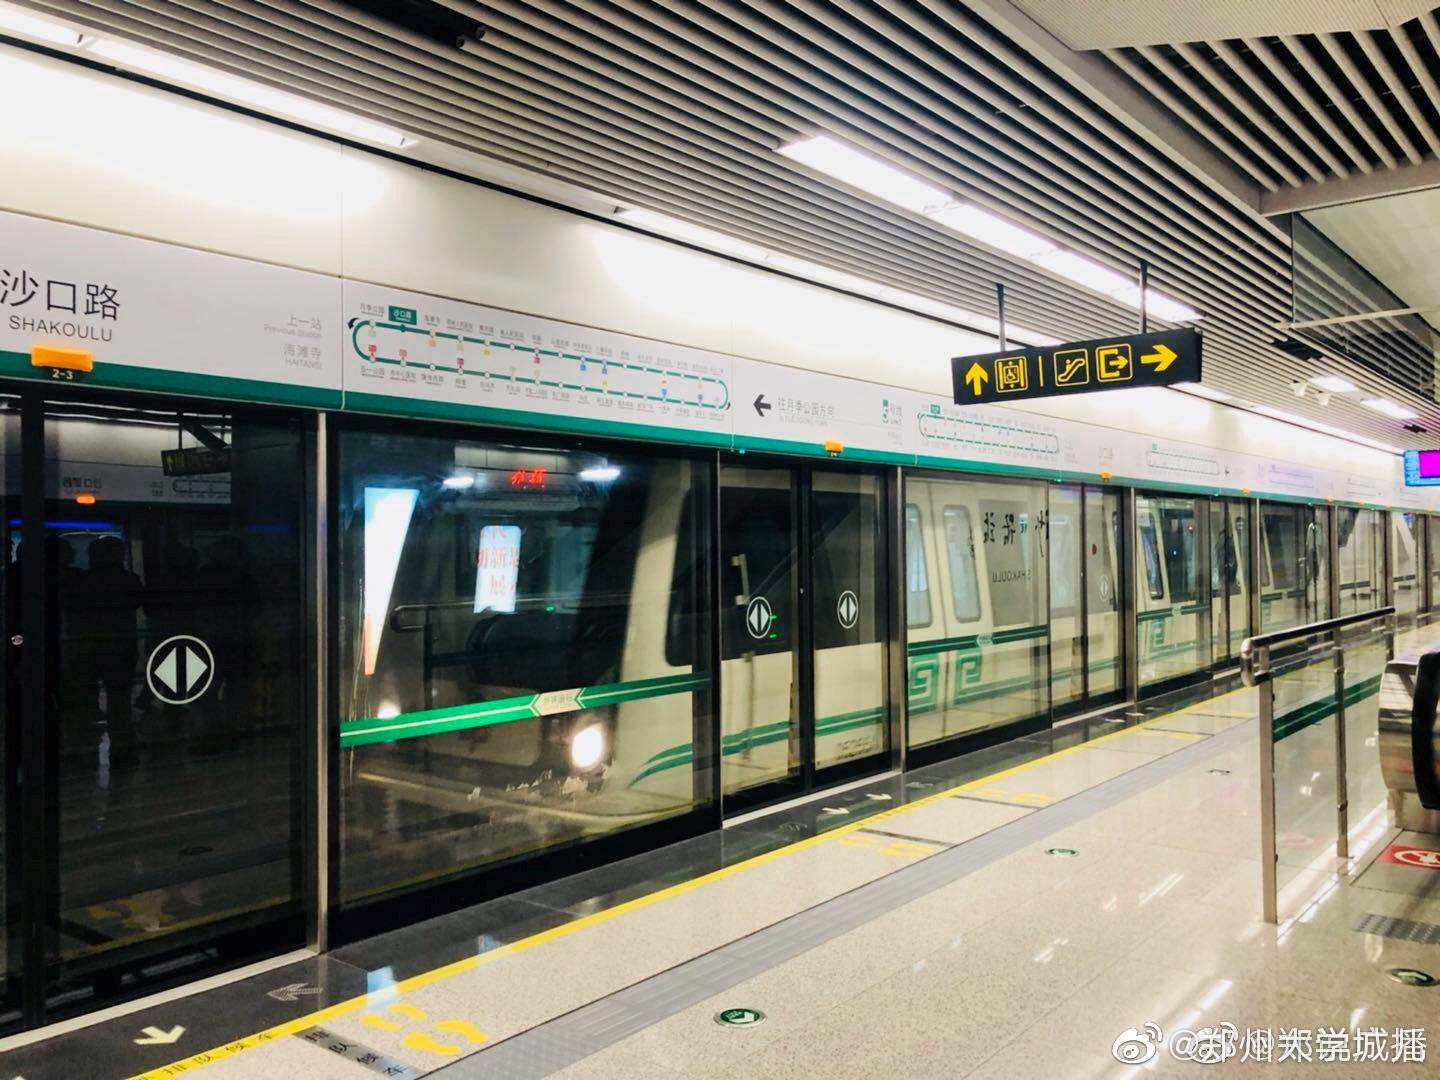 郑州地铁线路图_运营时间票价站点_查询下载|地铁图